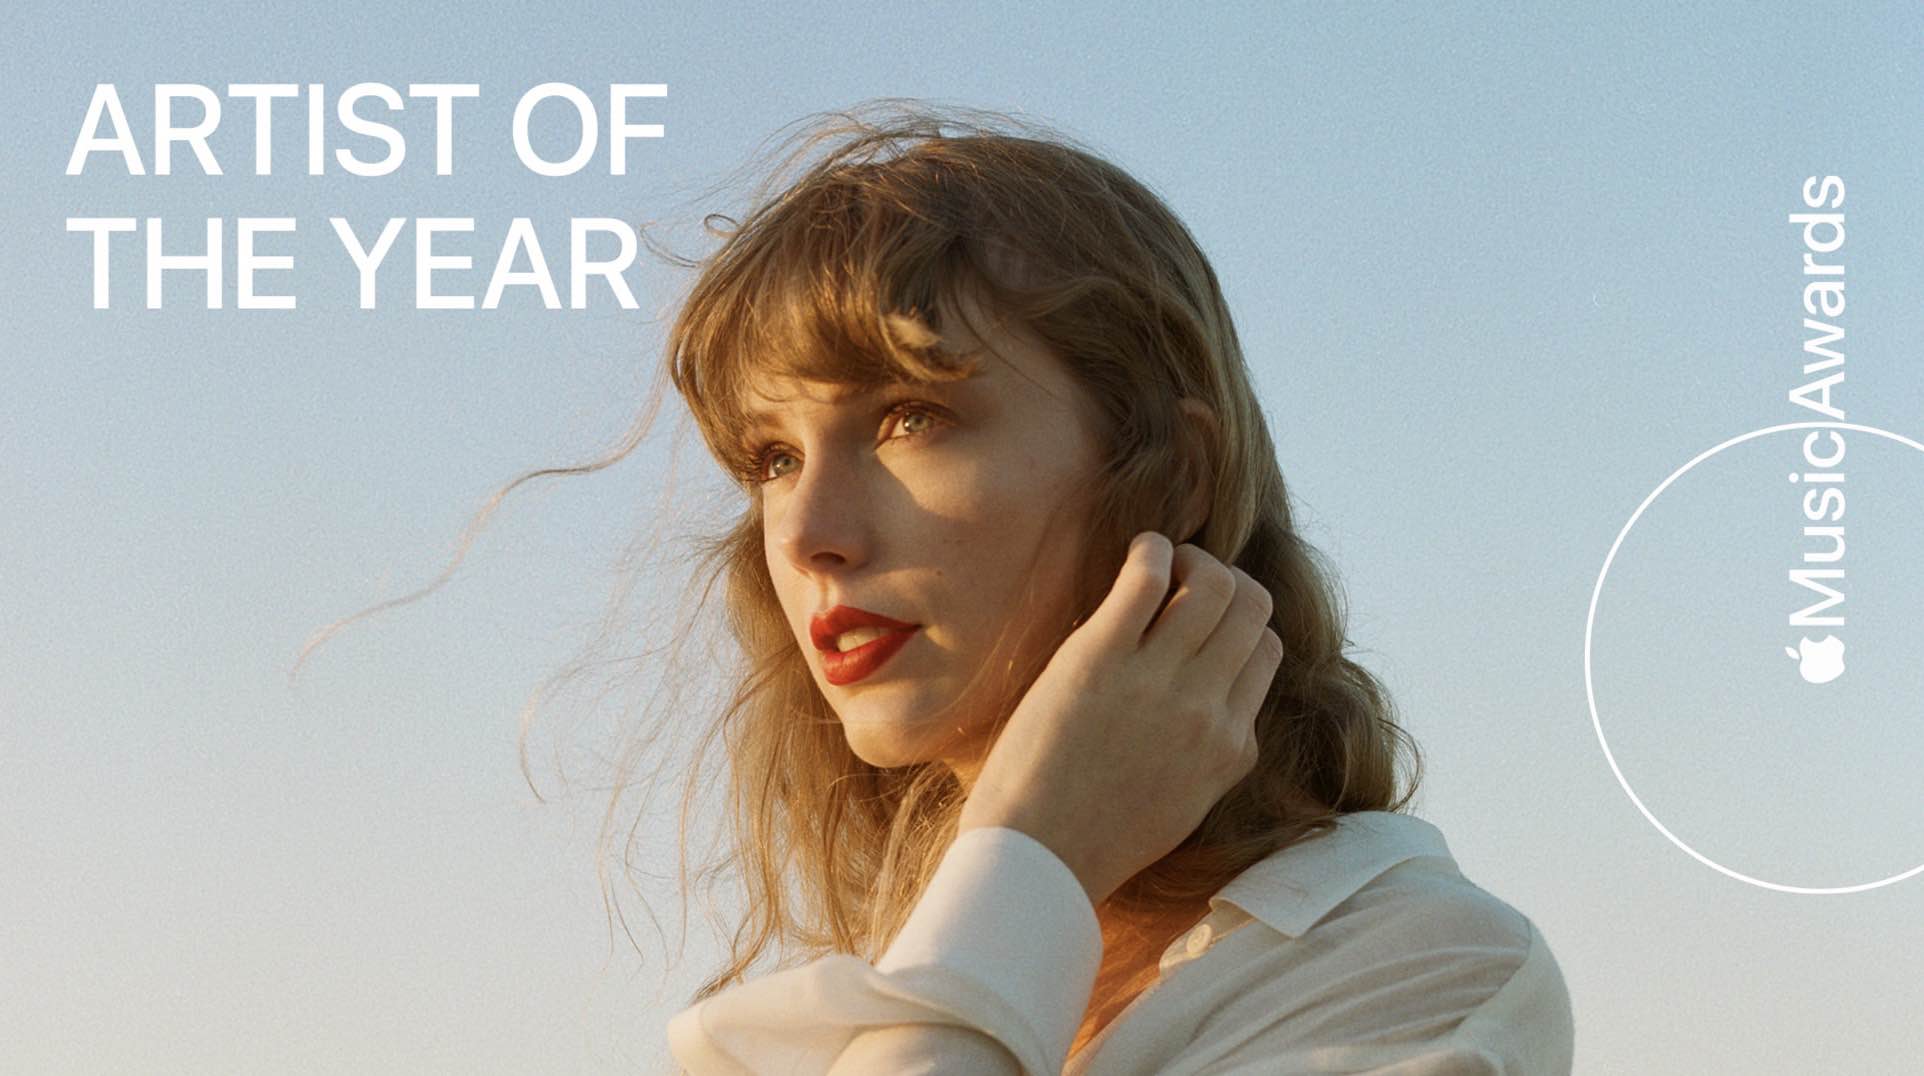 Taylor Swift Artystką Roku 2023 według Apple Music ciekawostki Teksty, Taylor Swift, Słuchacze, Prestiżowa Nagroda, nagroda, muzyka apple, Muzyka, Historia Karierki, Fanatycy, Ewolucja Twórczości, Artystka Roku 2023, Apple music  Na pewno dobrze wam znana Taylor Swift została uznana za Artystkę Roku 2023 przez Apple Music, co stanowi ogromne wyróżnienie dla tej utalentowanej artystki. taylof 3